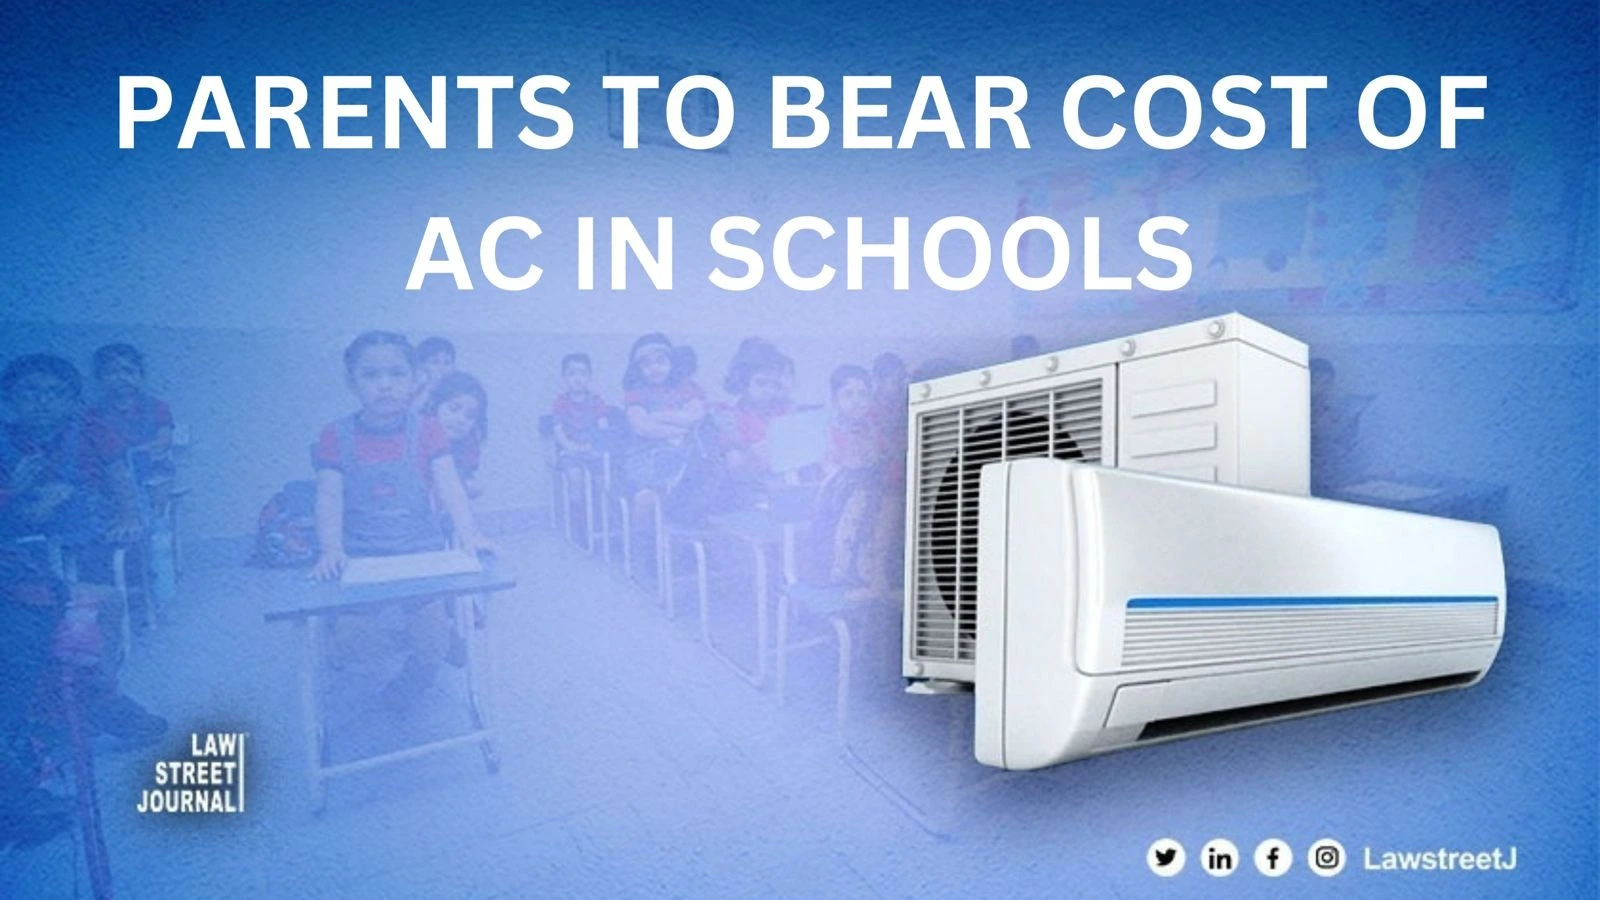 Parents must bear cost of AC in schools says Delhi HC